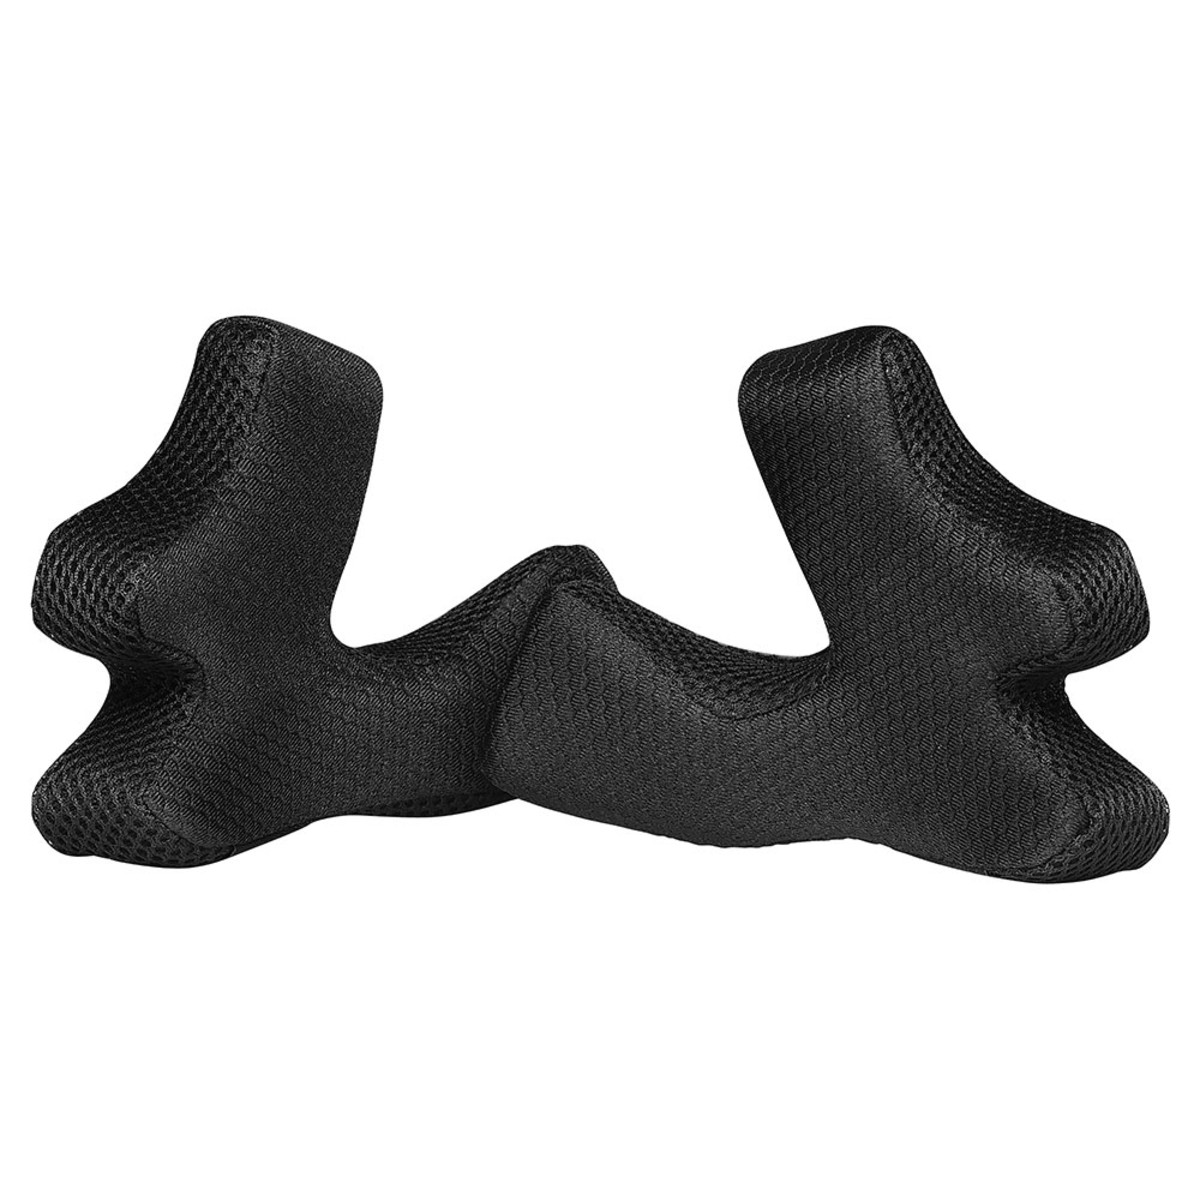 Troy Lee Designs 3D Cheek Pads SE4 Carbon/Composite Black